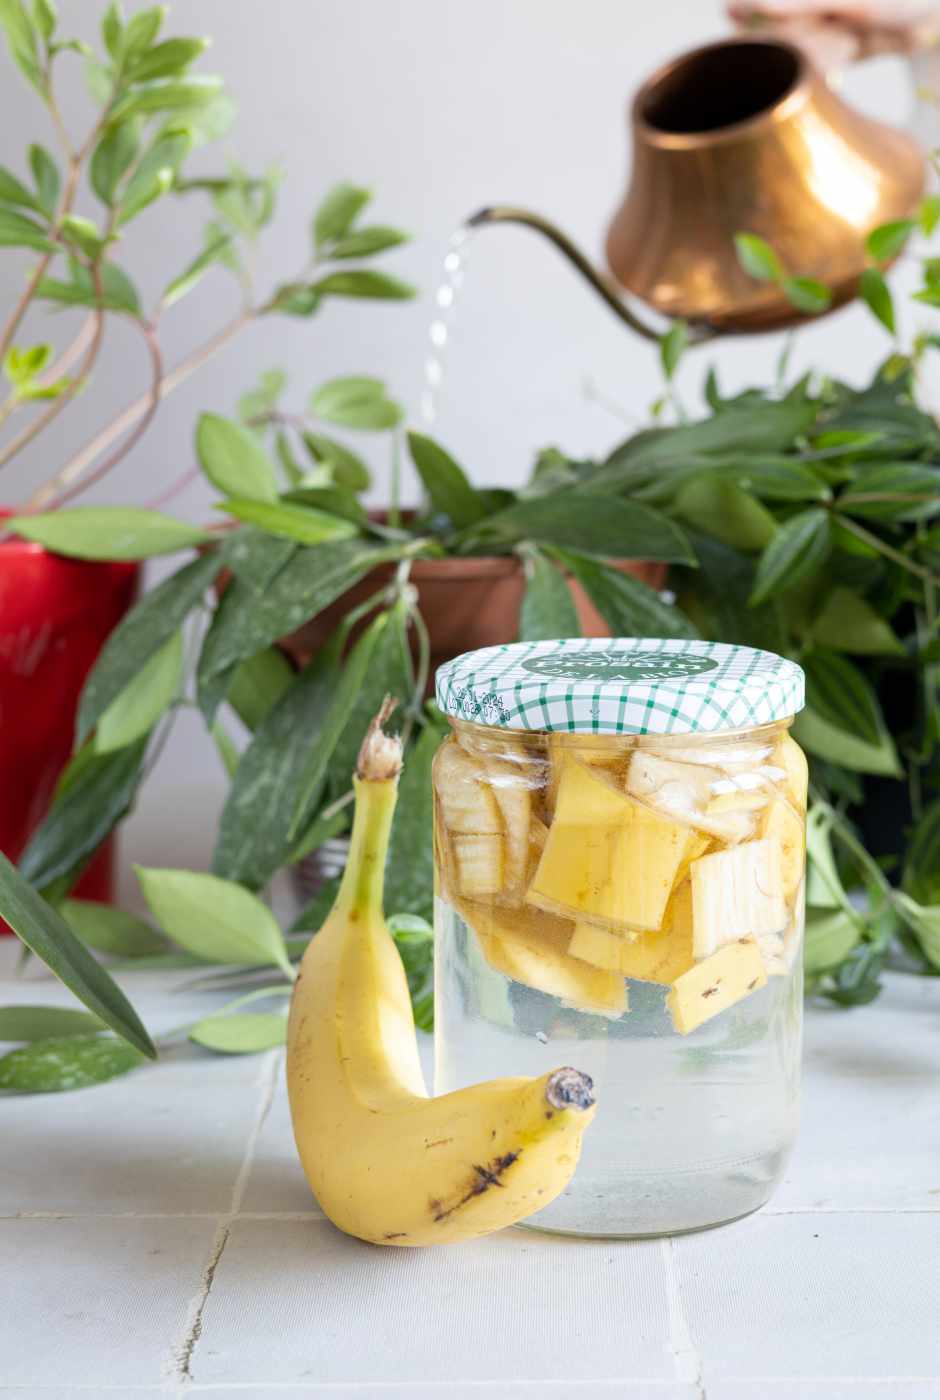 Fabriquez votre engrais naturel avec des peaux de bananes